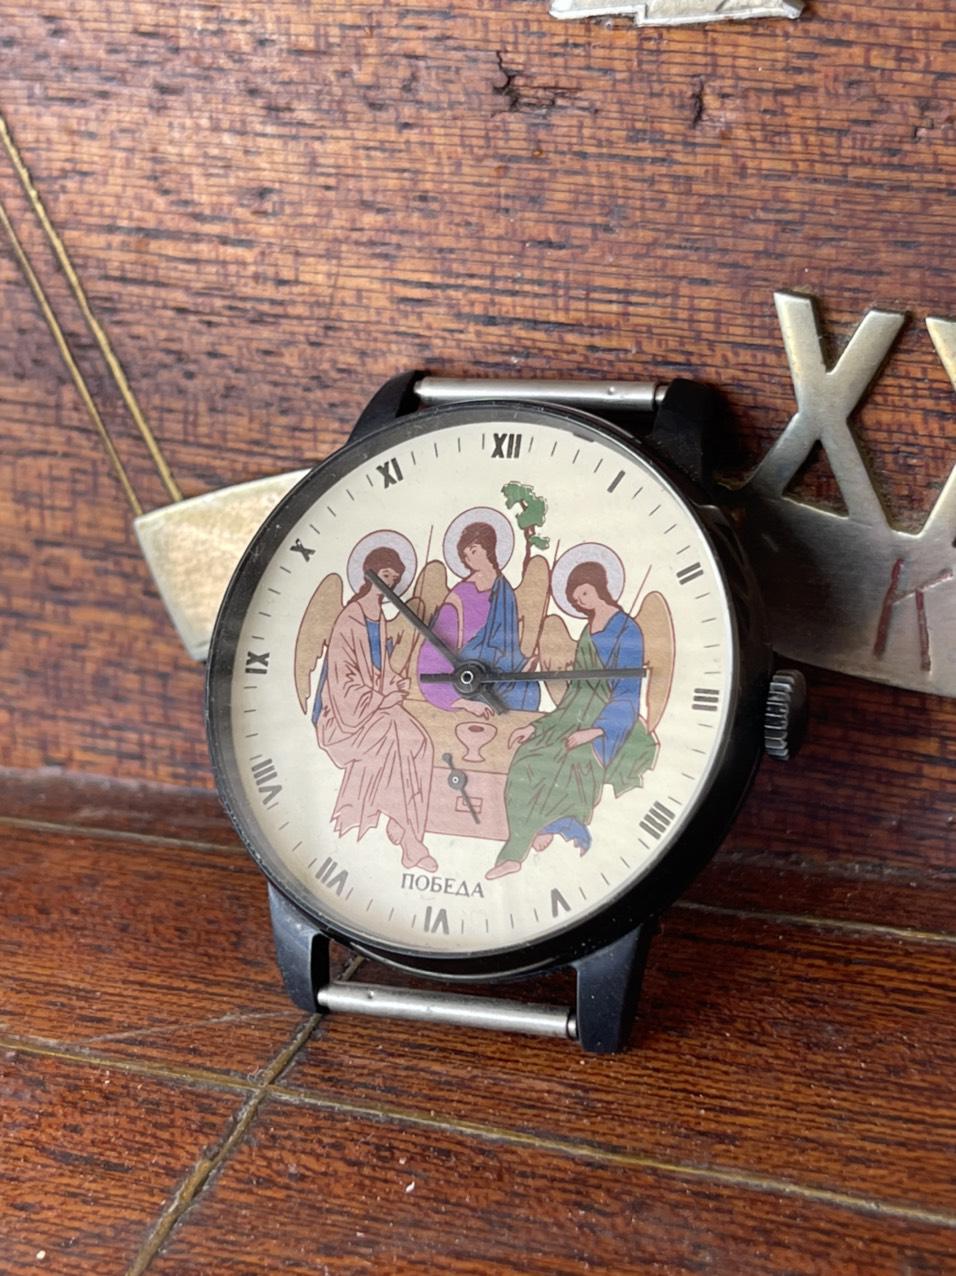 Đồng hồ đeo tay công giáo - Đồng hồ cổ Pabeda